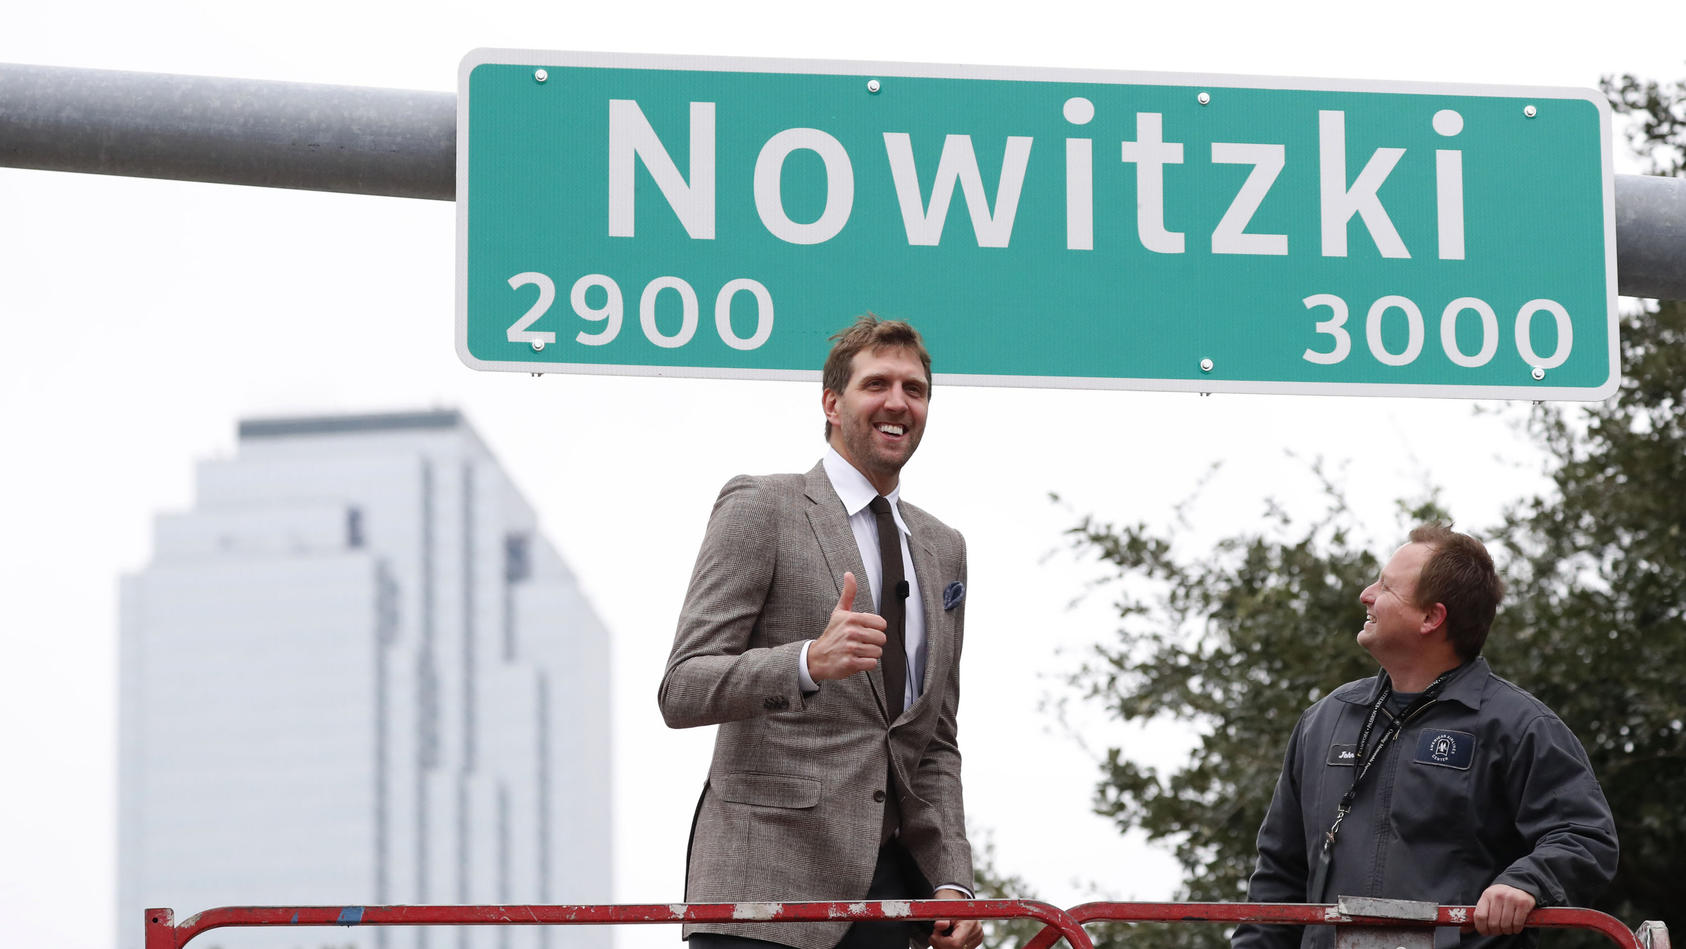 30.10.2019, USA, Dallas: Dirk Nowitzki (l) aus Deutschland, ehemaliger NBA-Basketballspieler für die Dallas Mavericks, gibt einen Daumen nach oben nach der Enthüllung eines Schilds für eine nach ihm benannte Straße. Foto: Lm Otero/AP/dpa +++ dpa-Bild